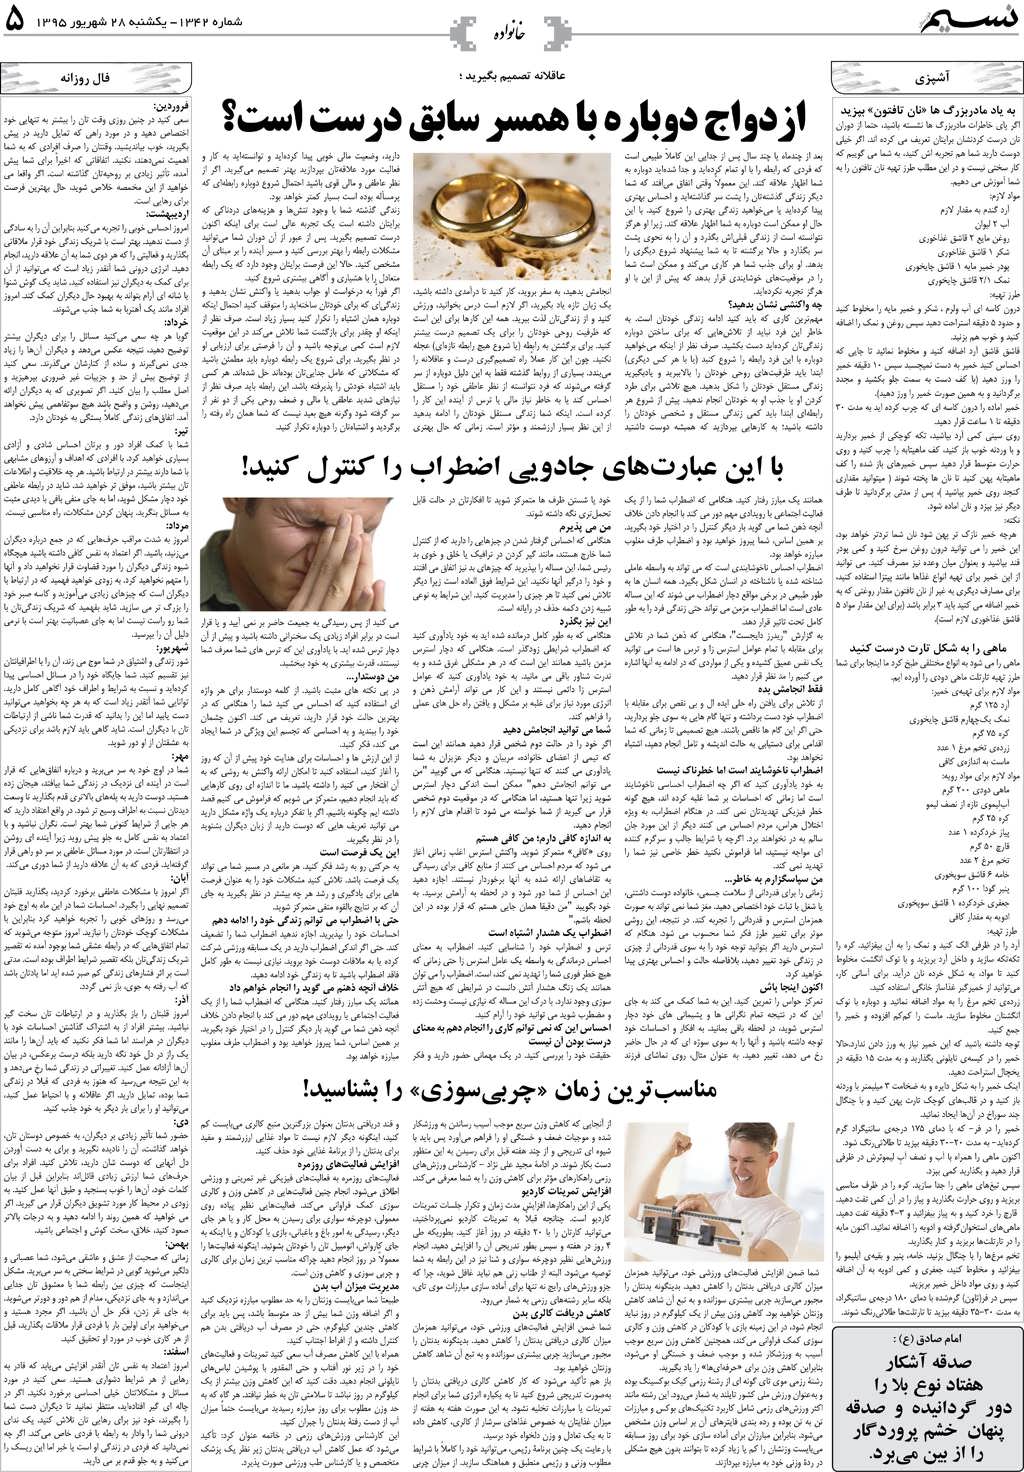 صفحه خانواده روزنامه نسیم شماره 1342